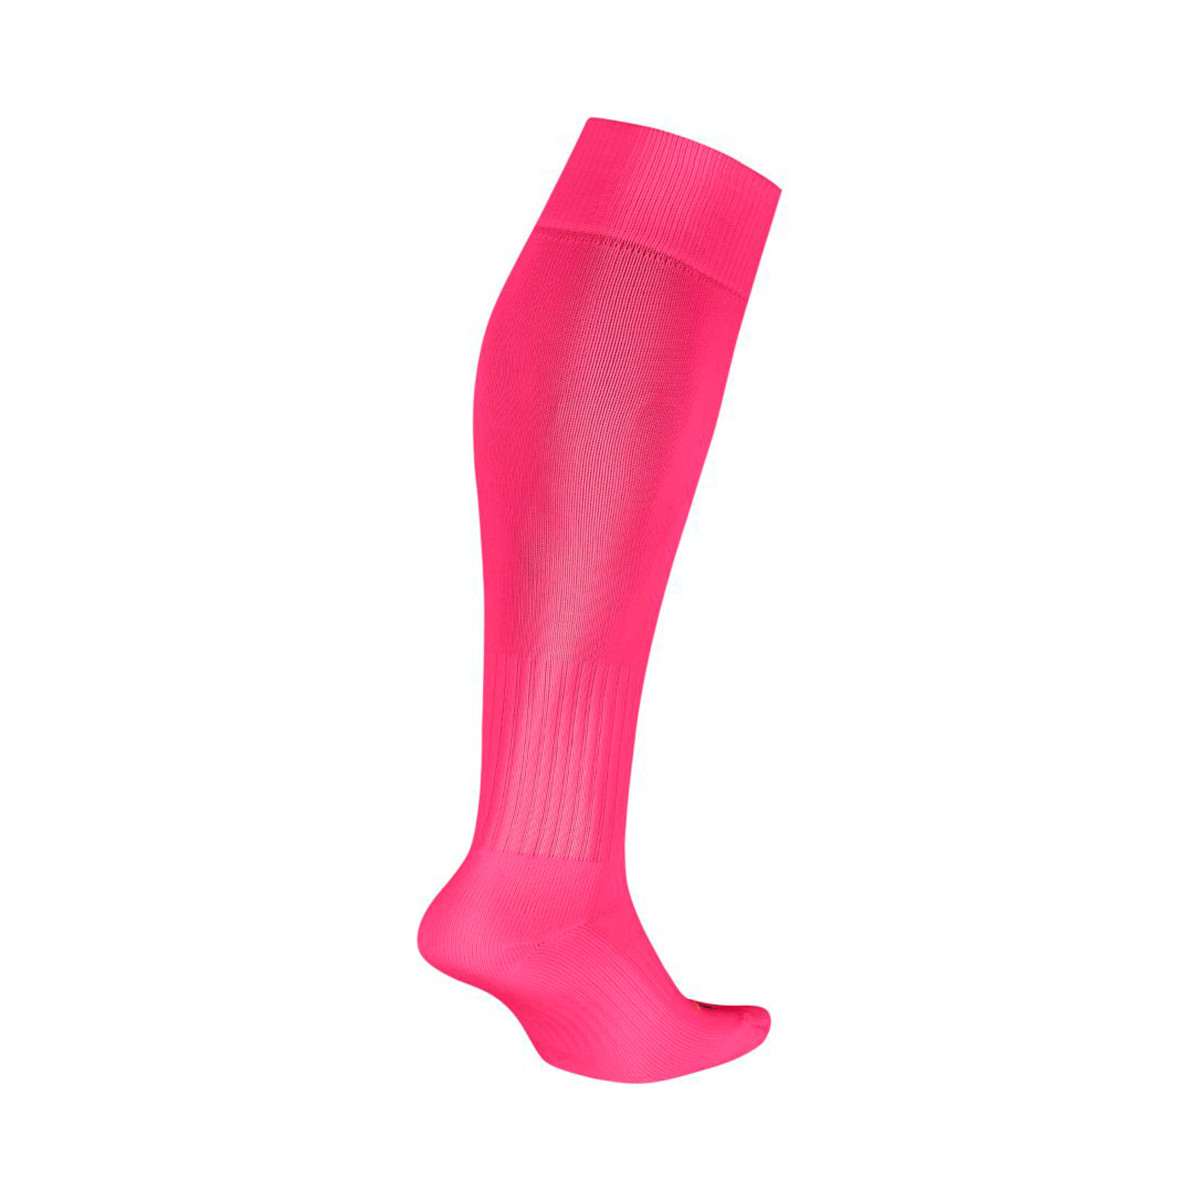 pink nike football socks